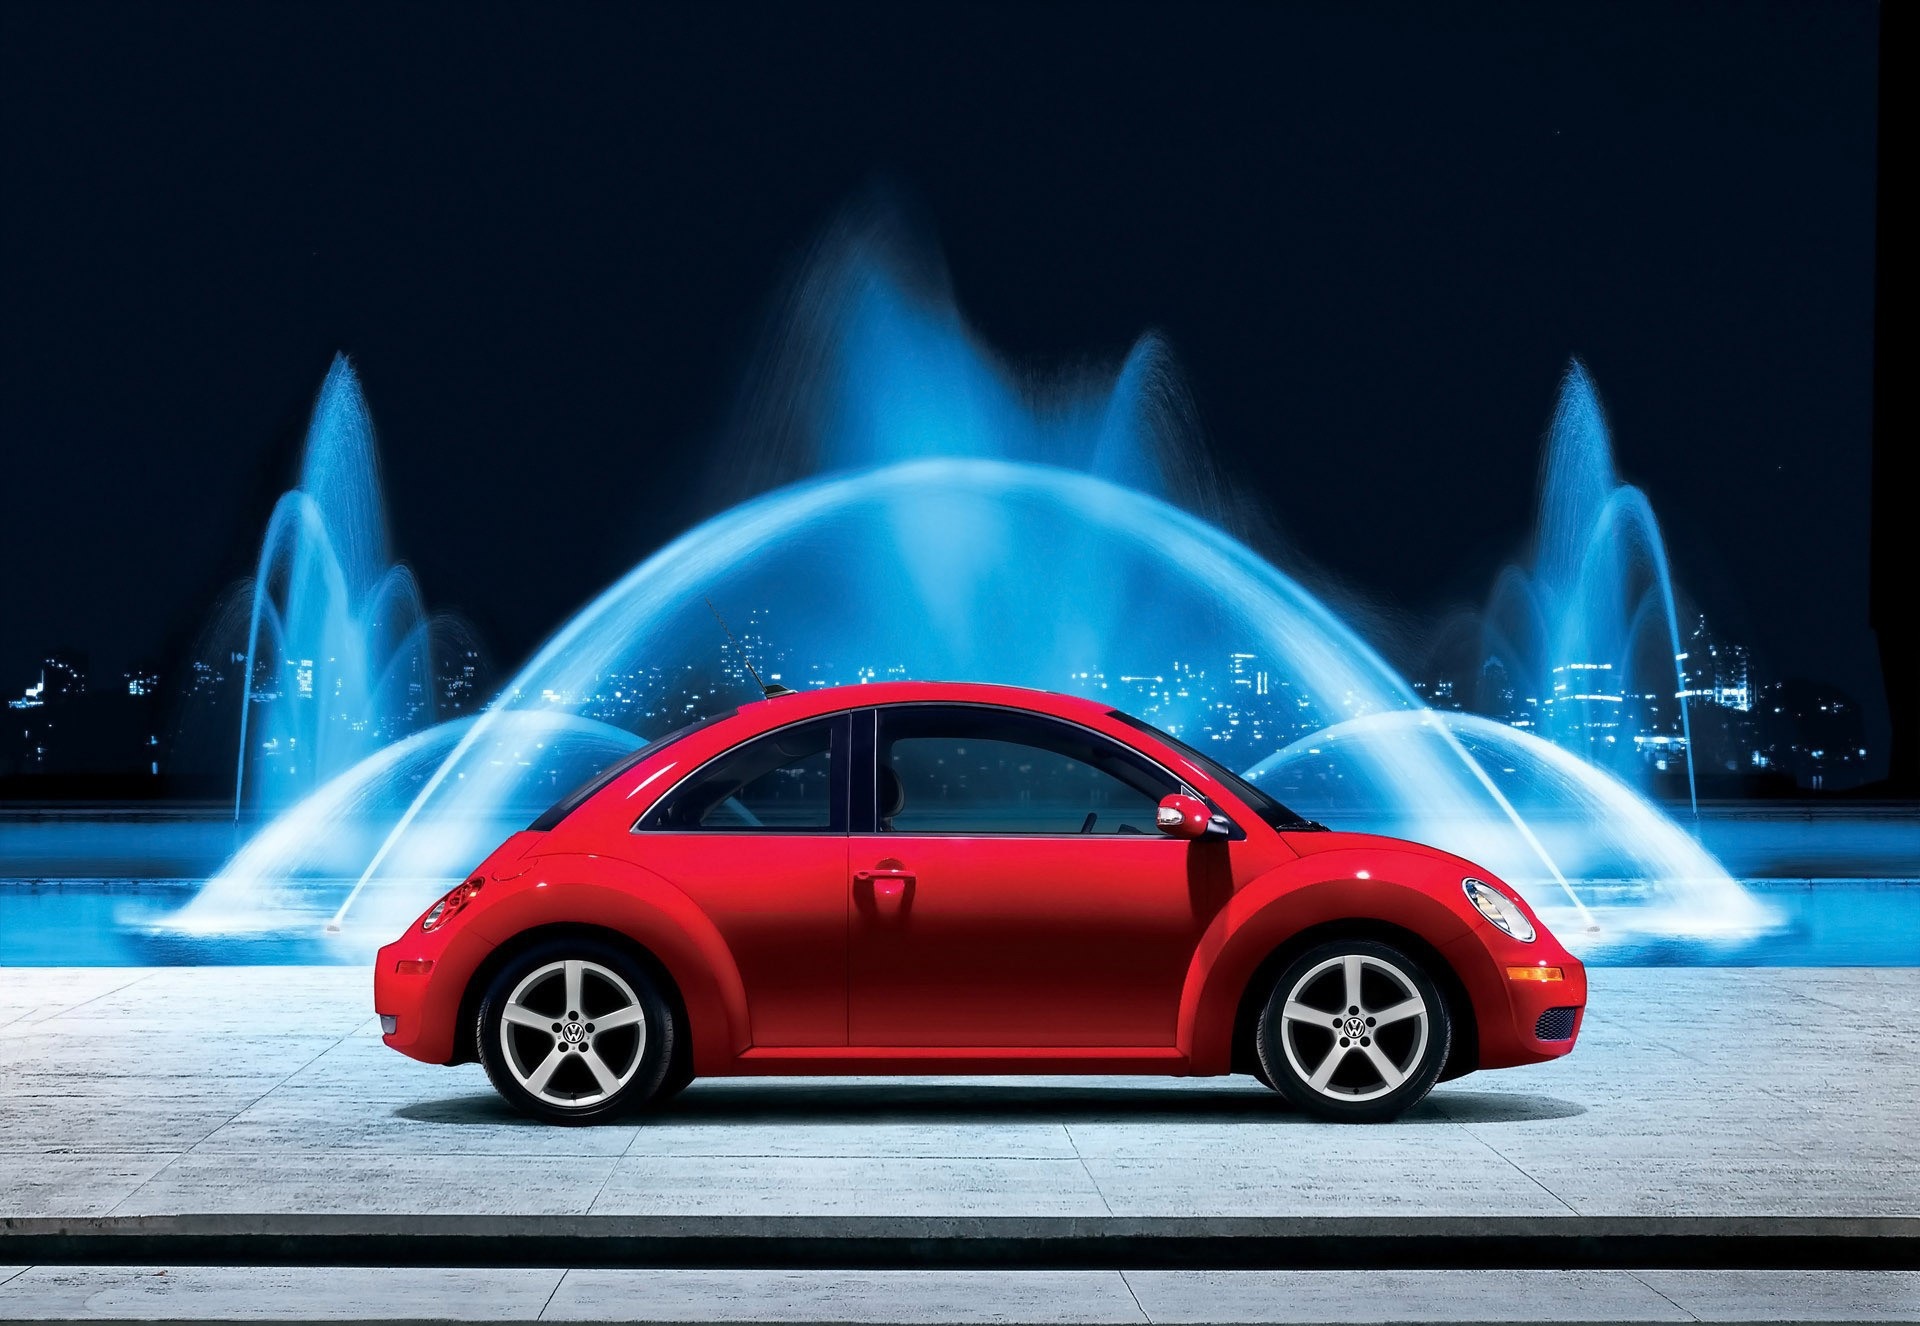 Volkswagen Beetle Wallpaper Image Photos Pictures Background